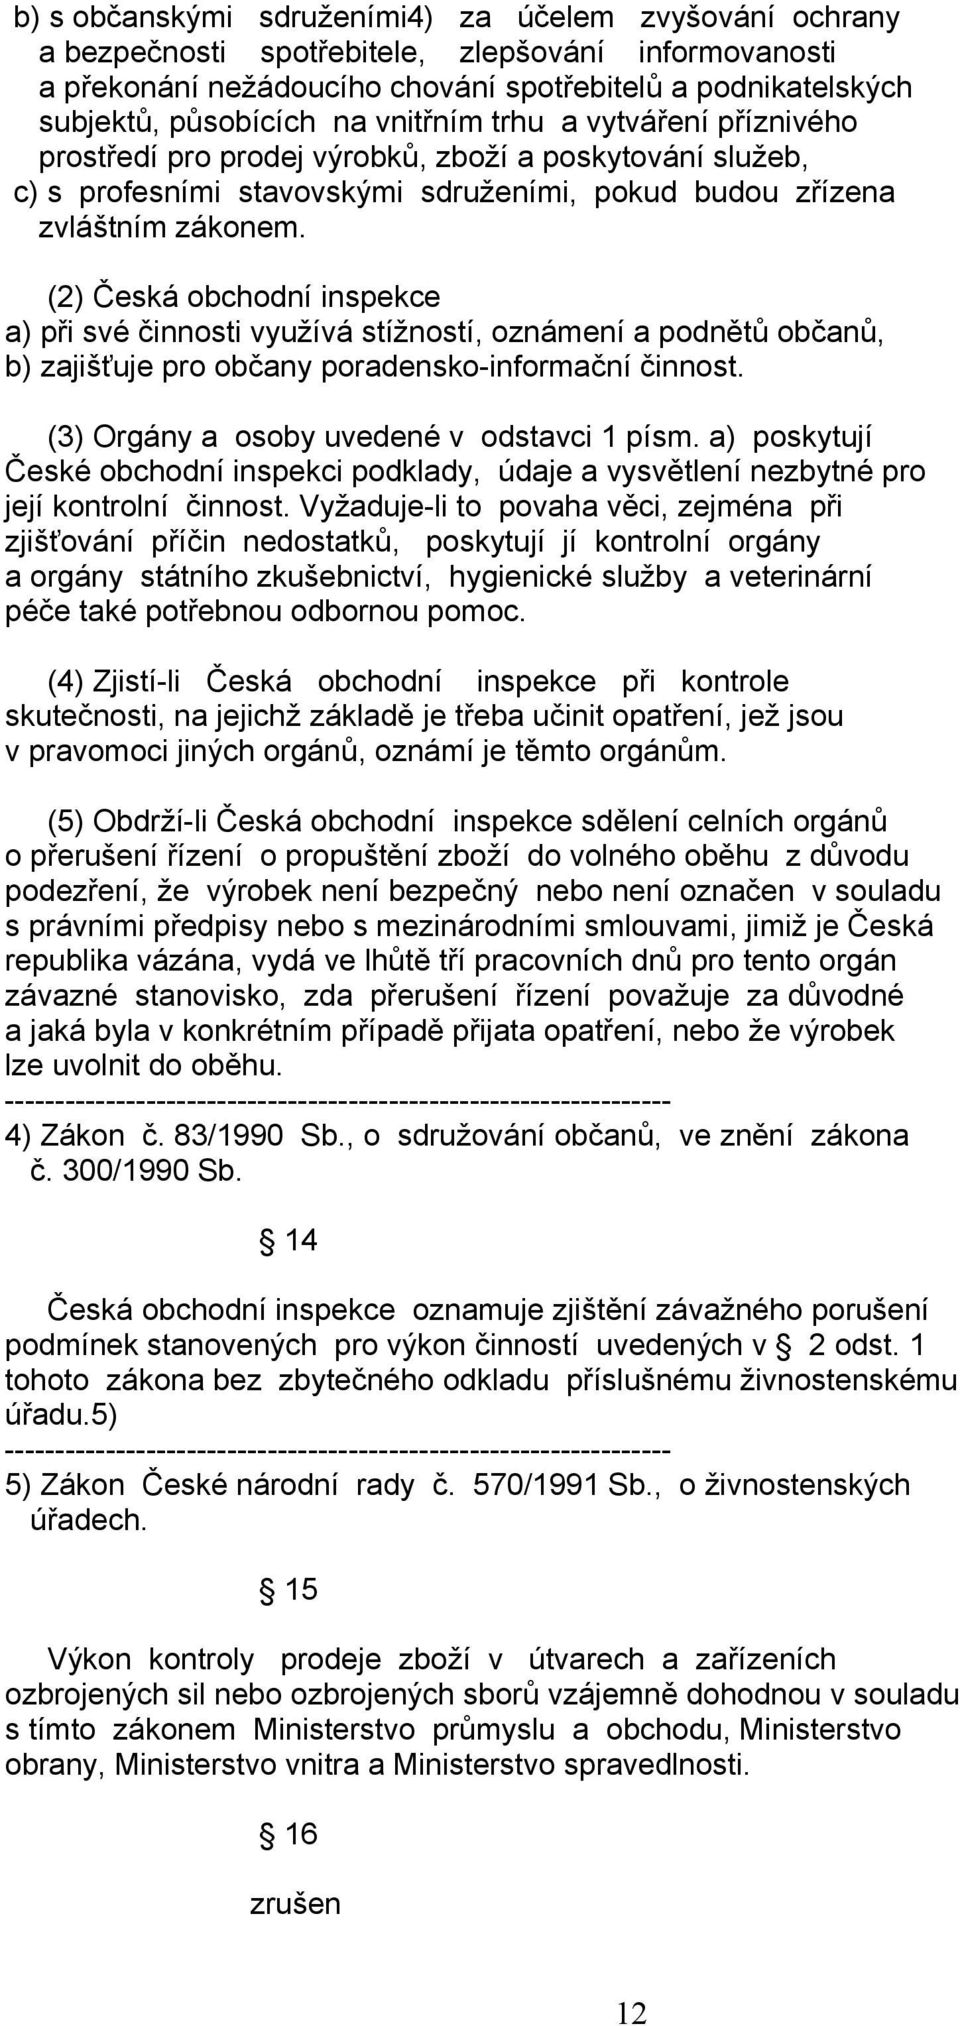 (2) Česká obchodní inspekce a) při své činnosti využívá stížností, oznámení a podnětů občanů, b) zajišťuje pro občany poradensko-informační činnost. (3) Orgány a osoby uvedené v odstavci 1 písm.